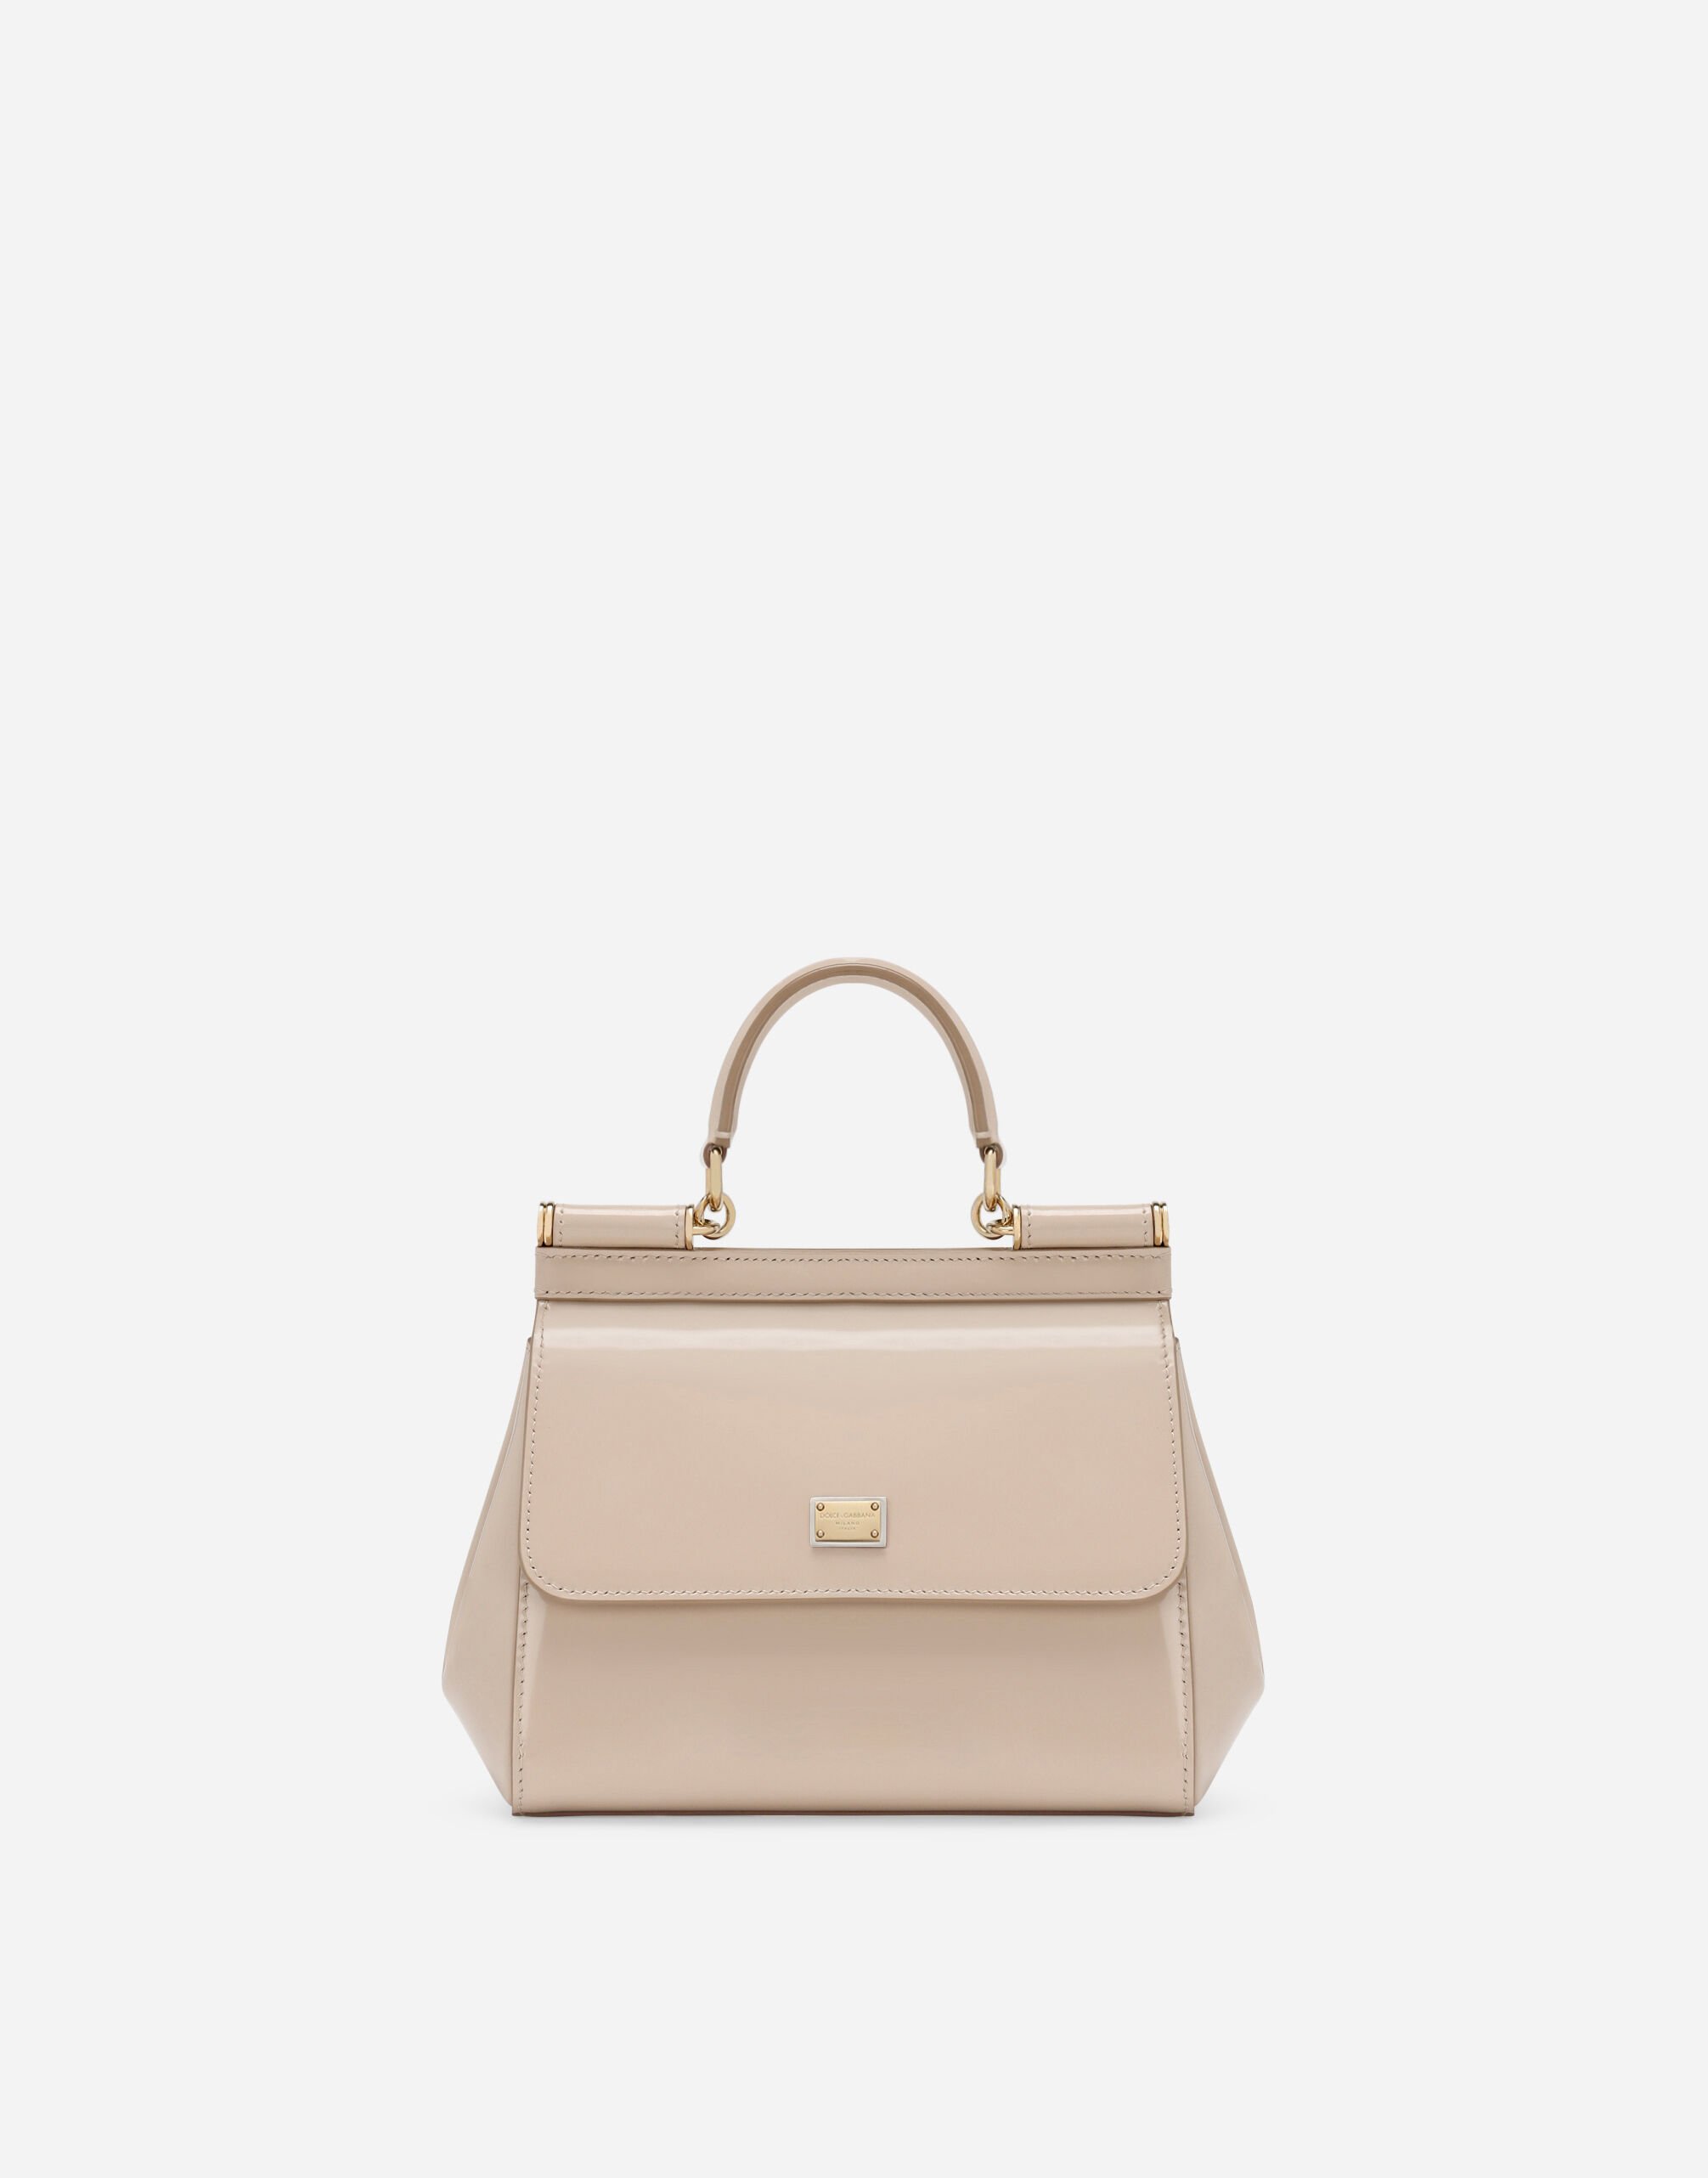 Dolce & Gabbana حقيبة يد سيسيلي متوسطة متعدد الألوان BB6002A2Y84